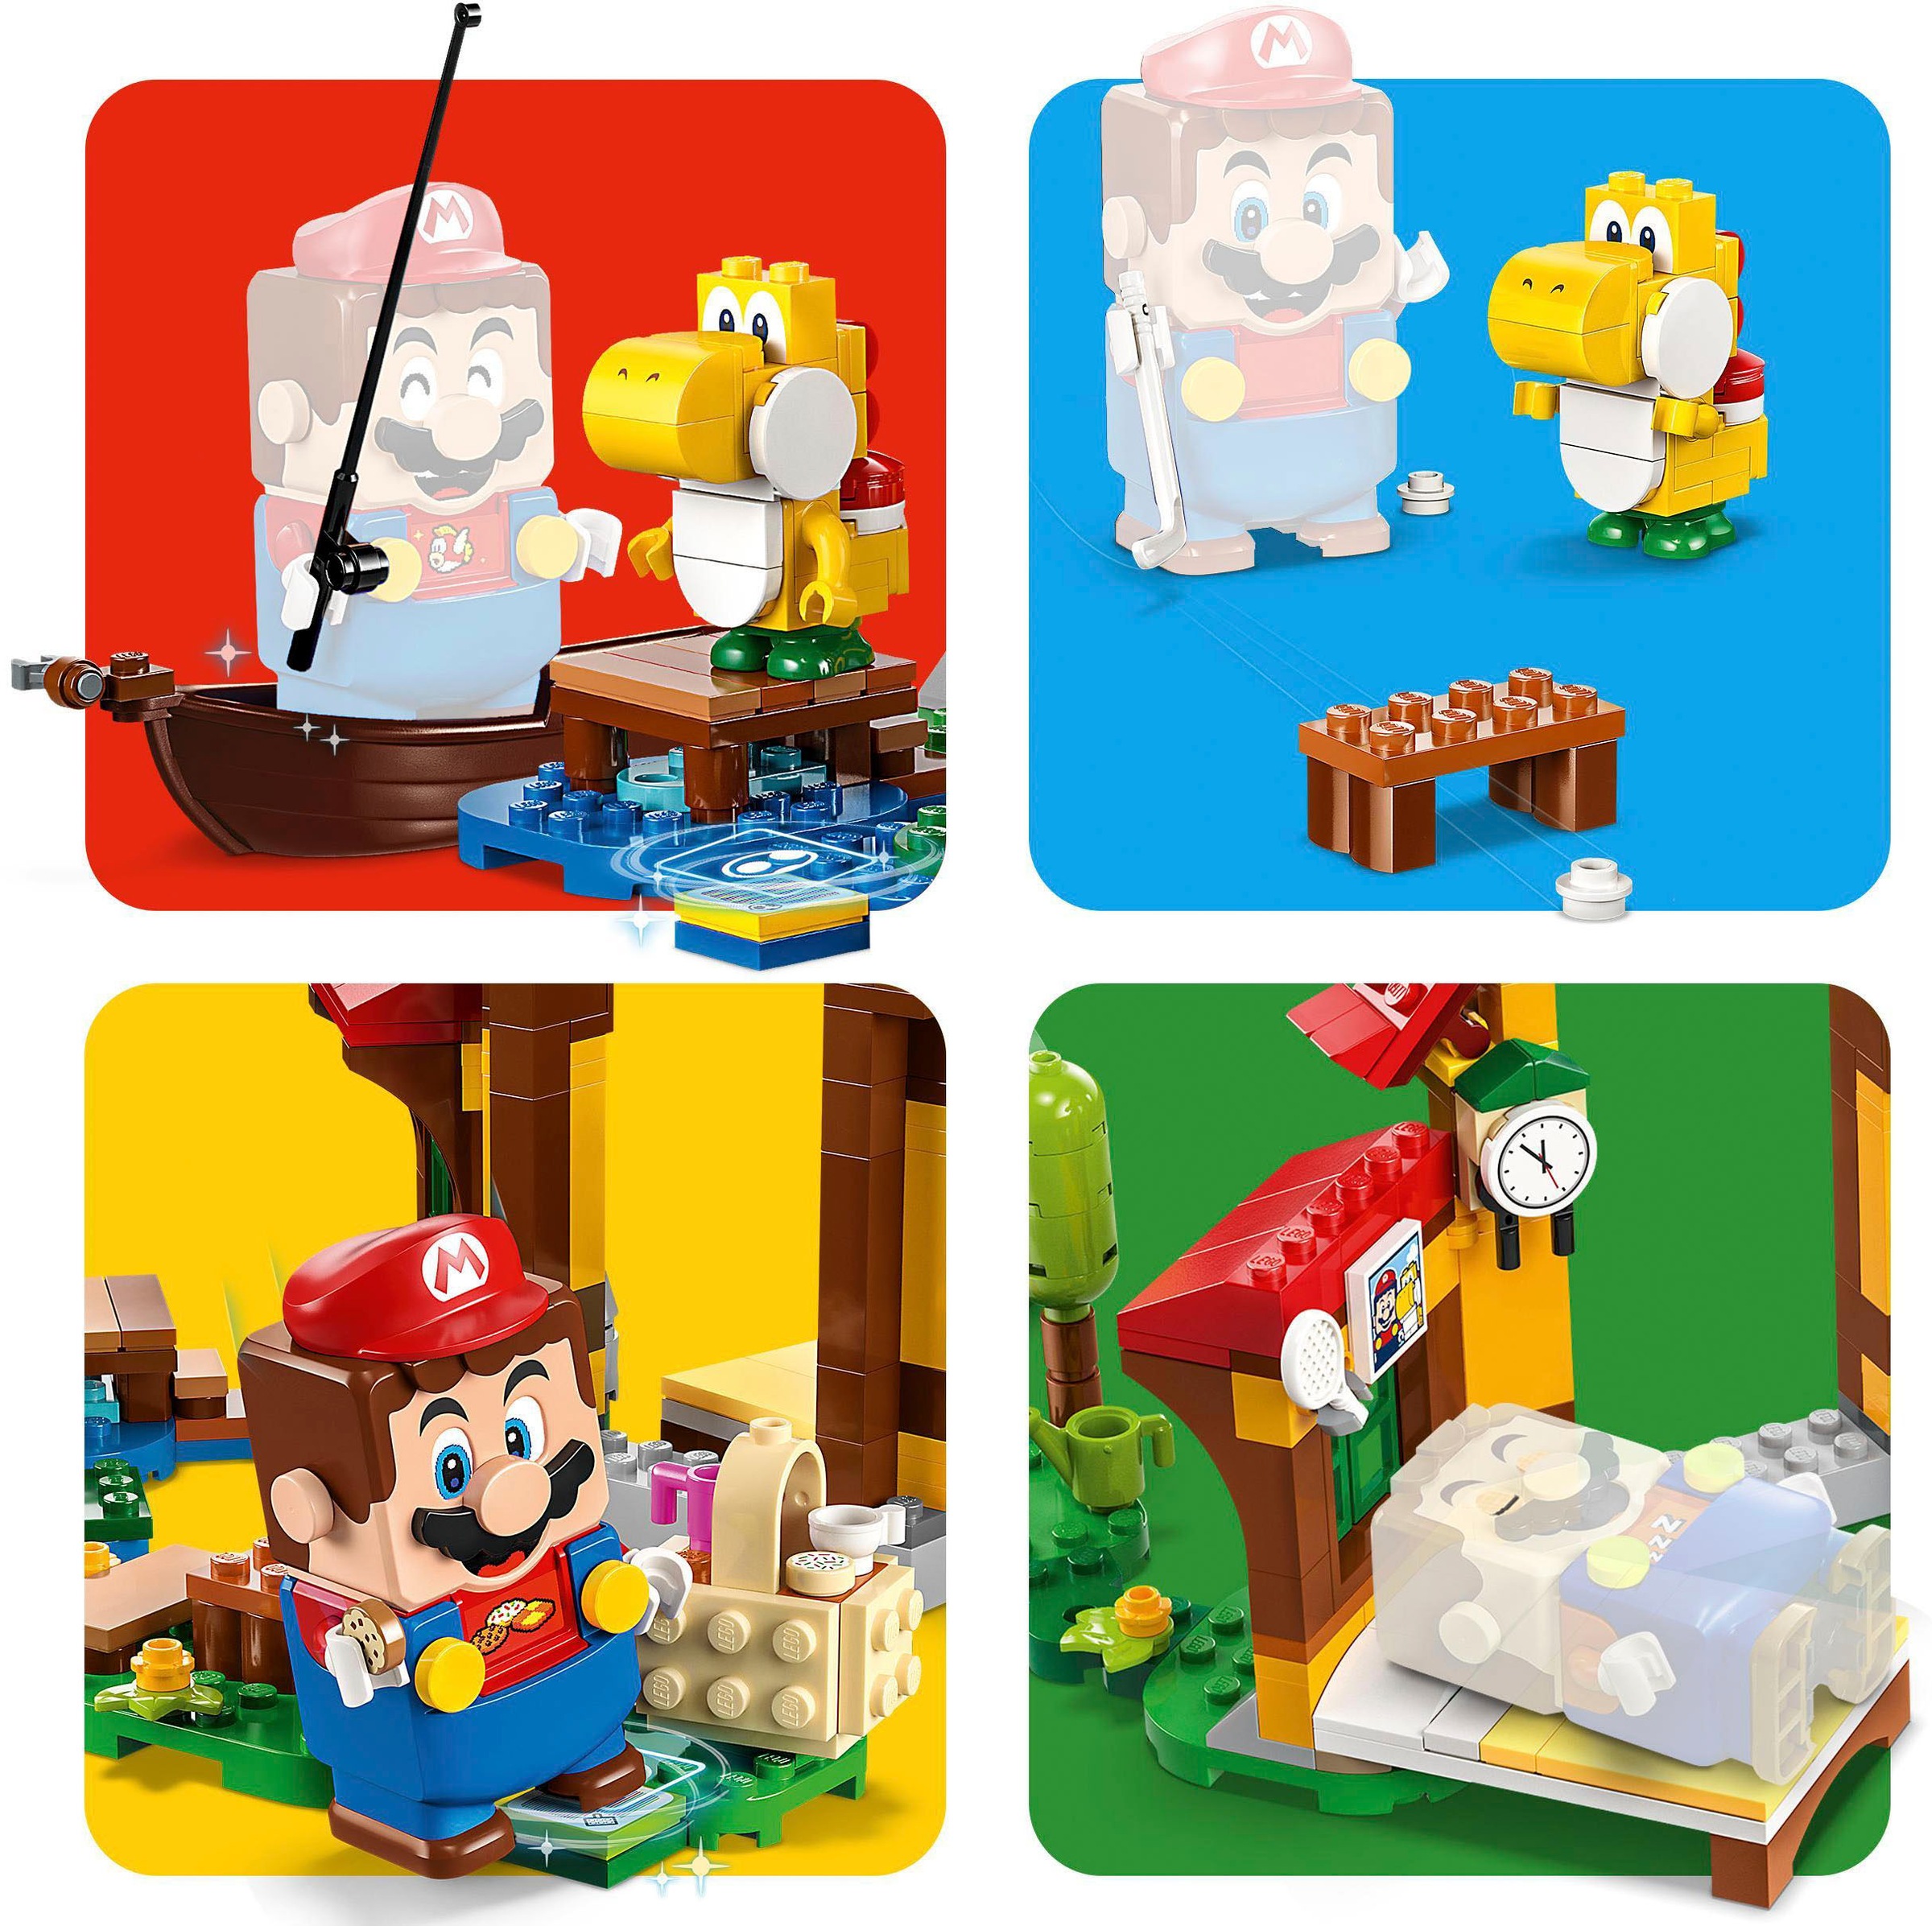 LEGO® Konstruktionsspielsteine »Picknick bei Mario – Erweiterungsset (71422), LEGO® Super Mario«, (259 St.), Made in Europe